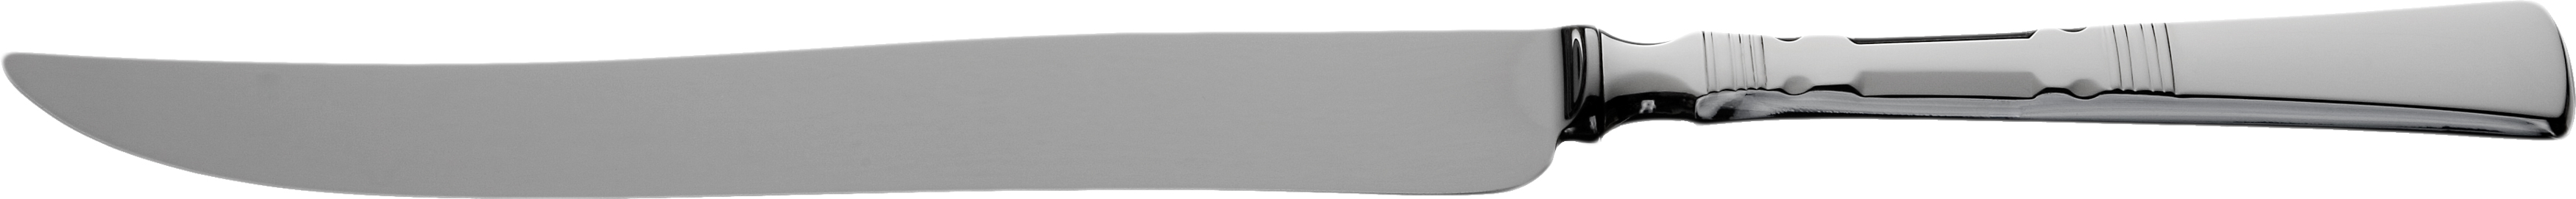 Forskjærskniv, Bankett sølvbestikk